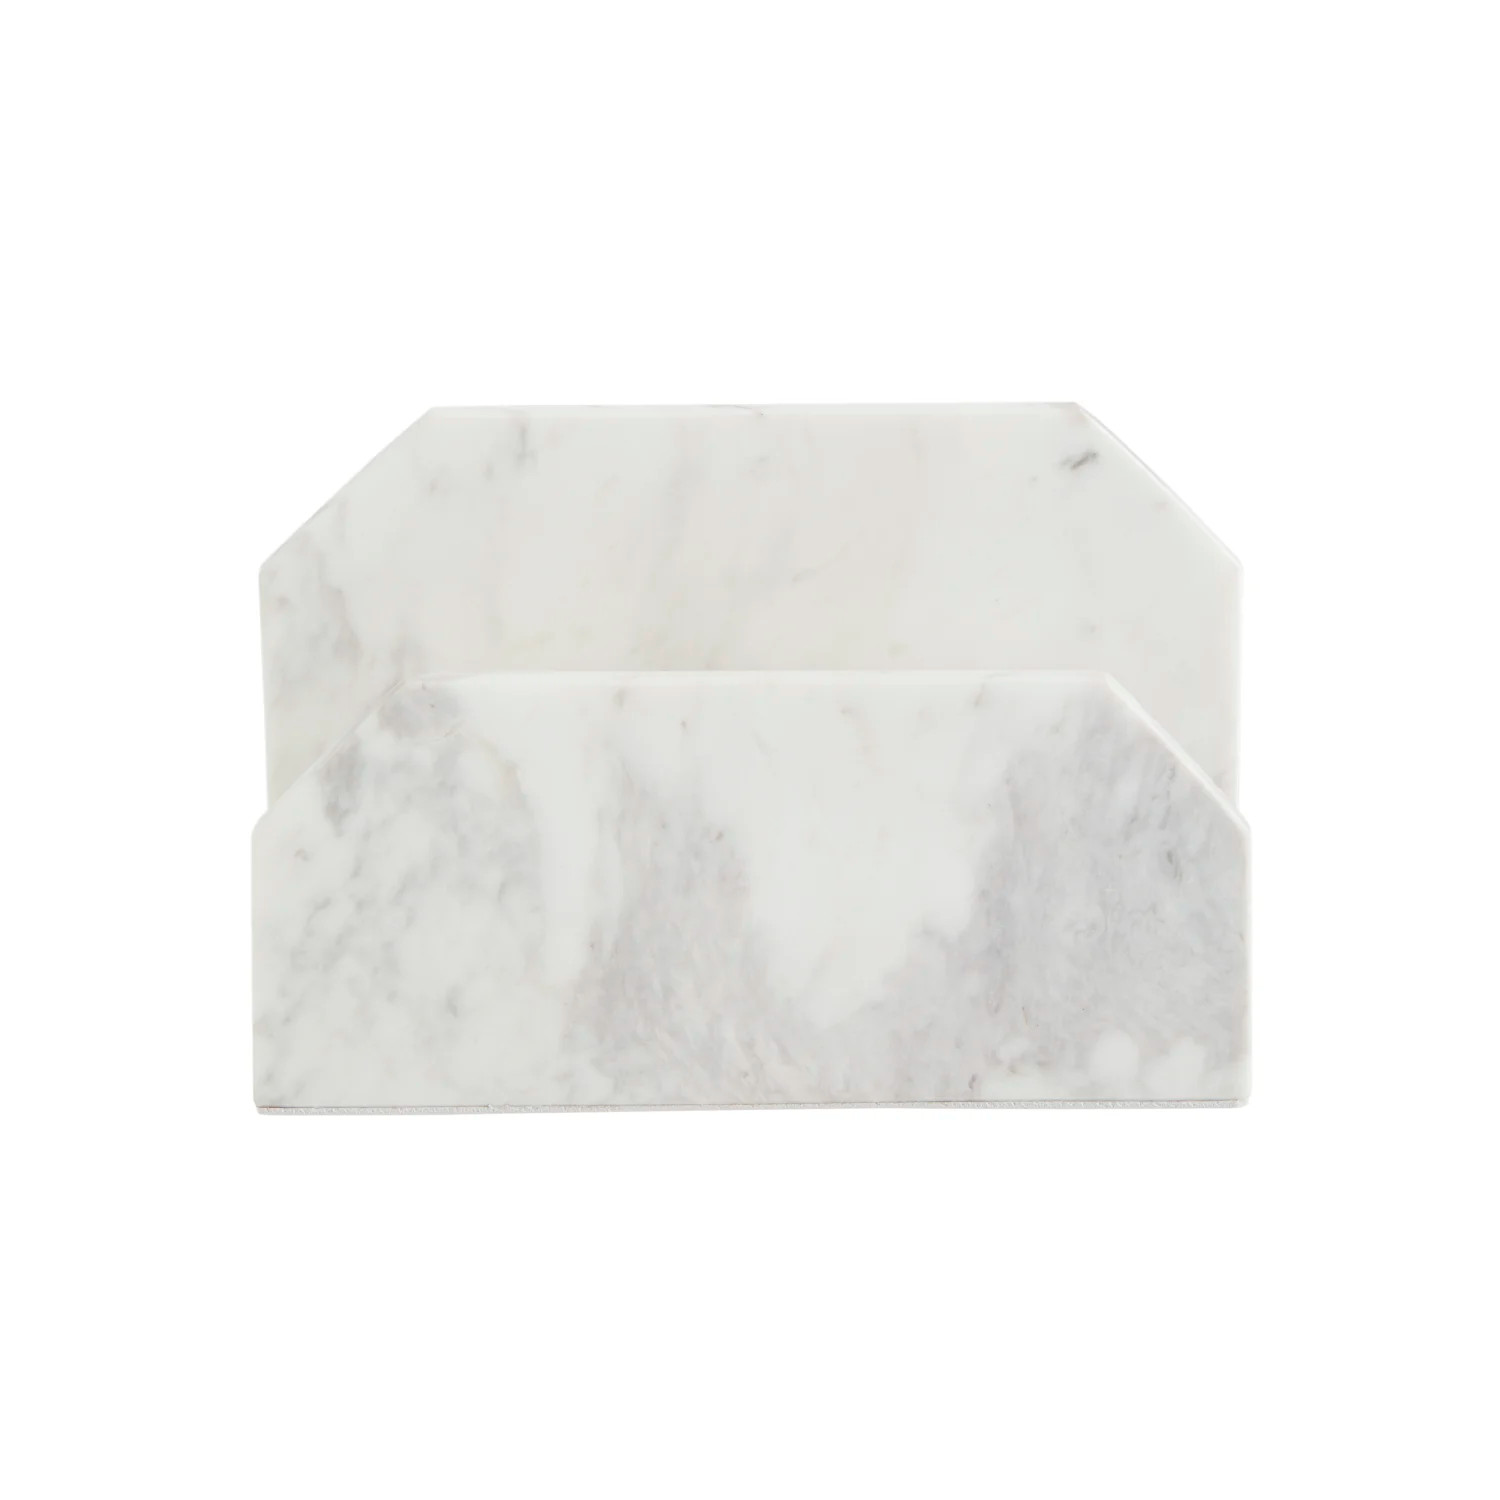 Marble Envelope Holder - White